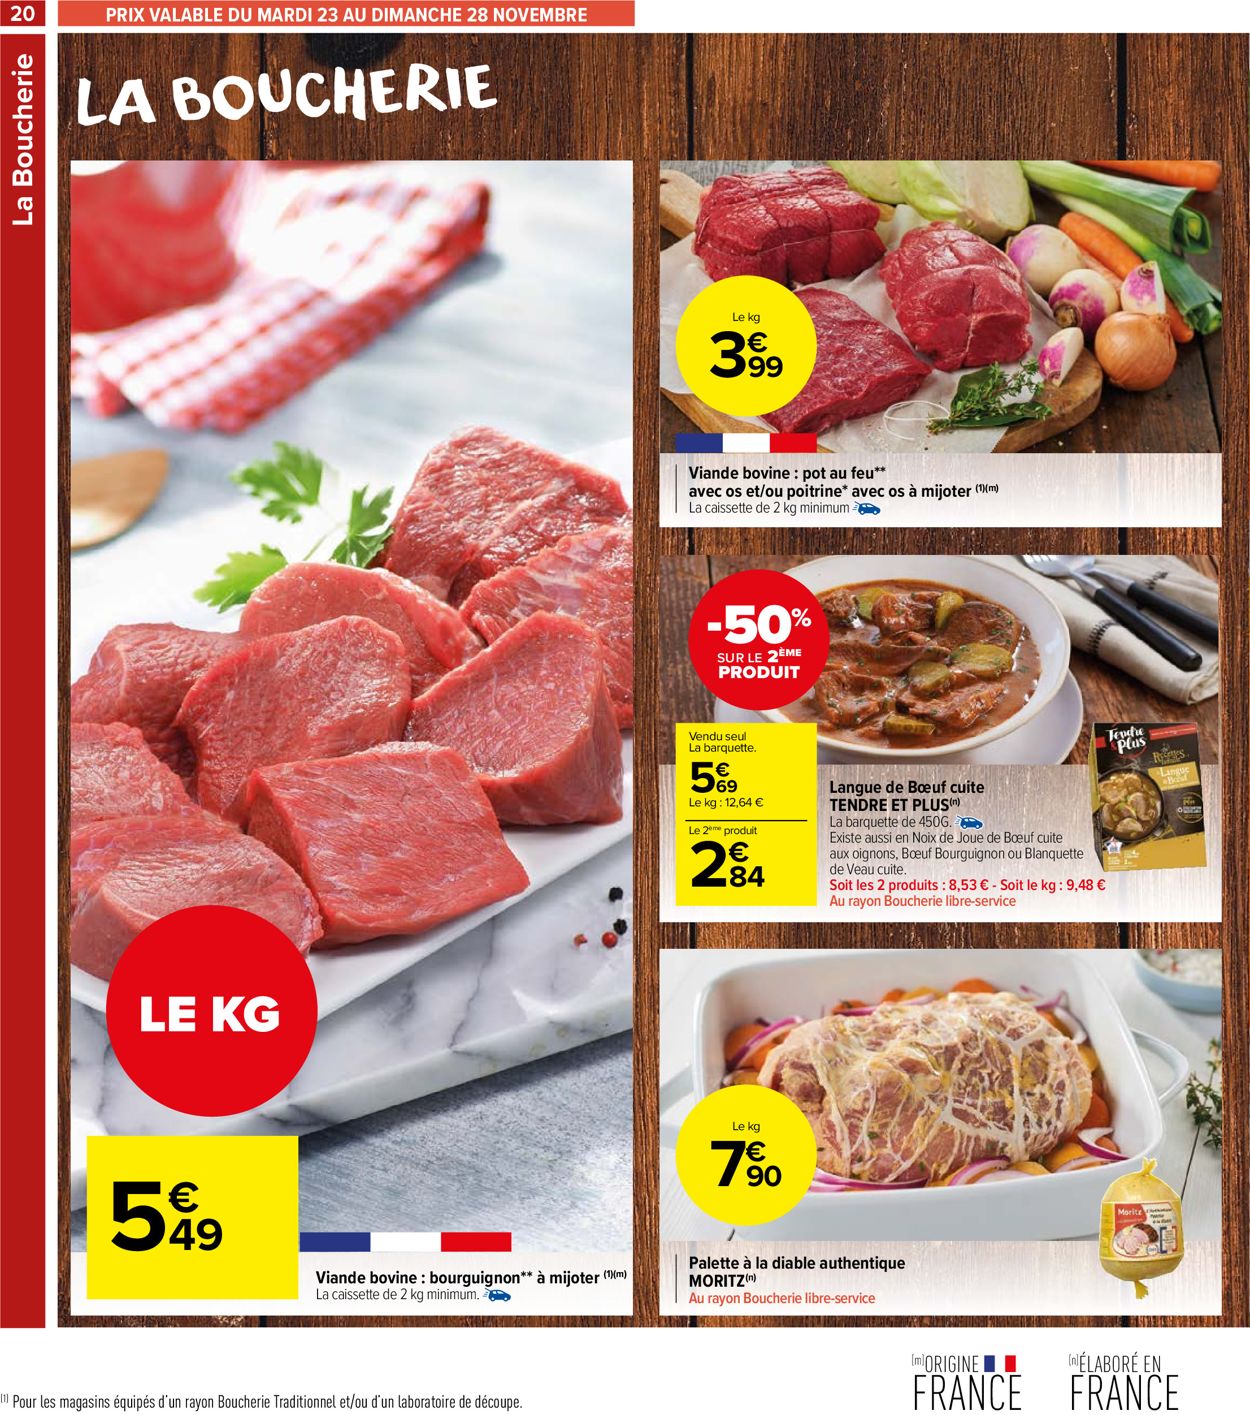 Carrefour Catalogue du 23.11.2021